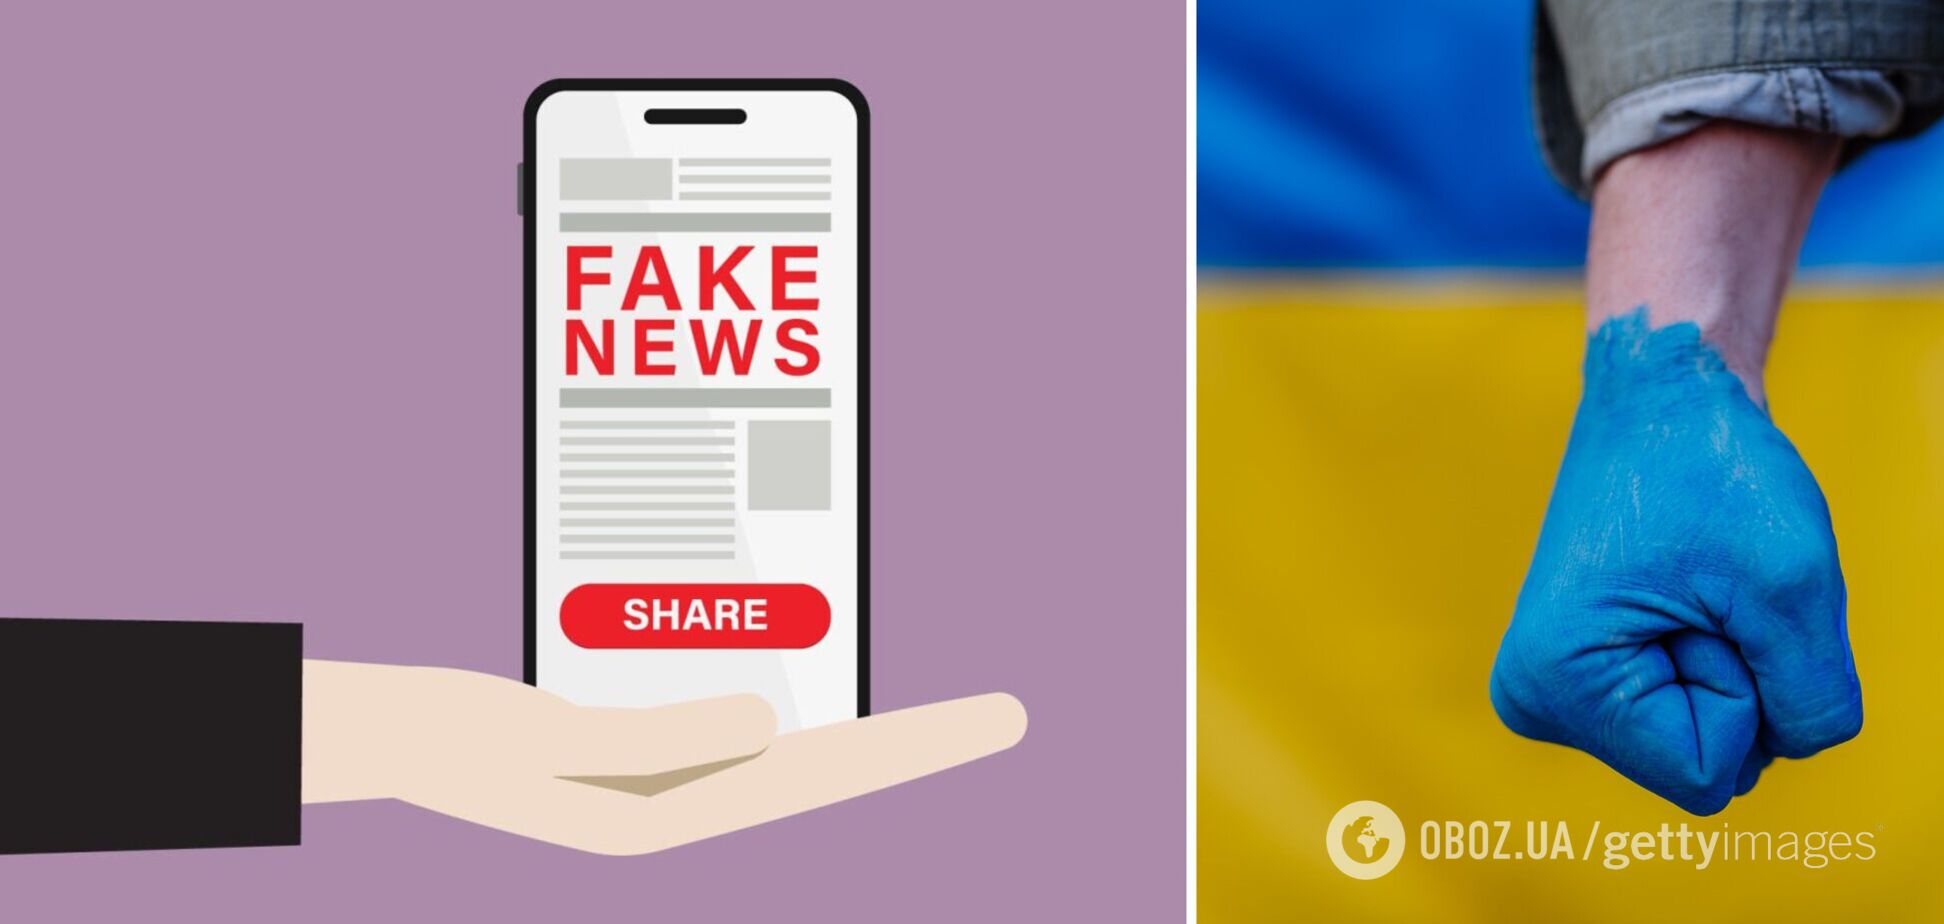 Украинцы очень хорошо распознают фейки и доверяют официальным источникам: результаты опроса